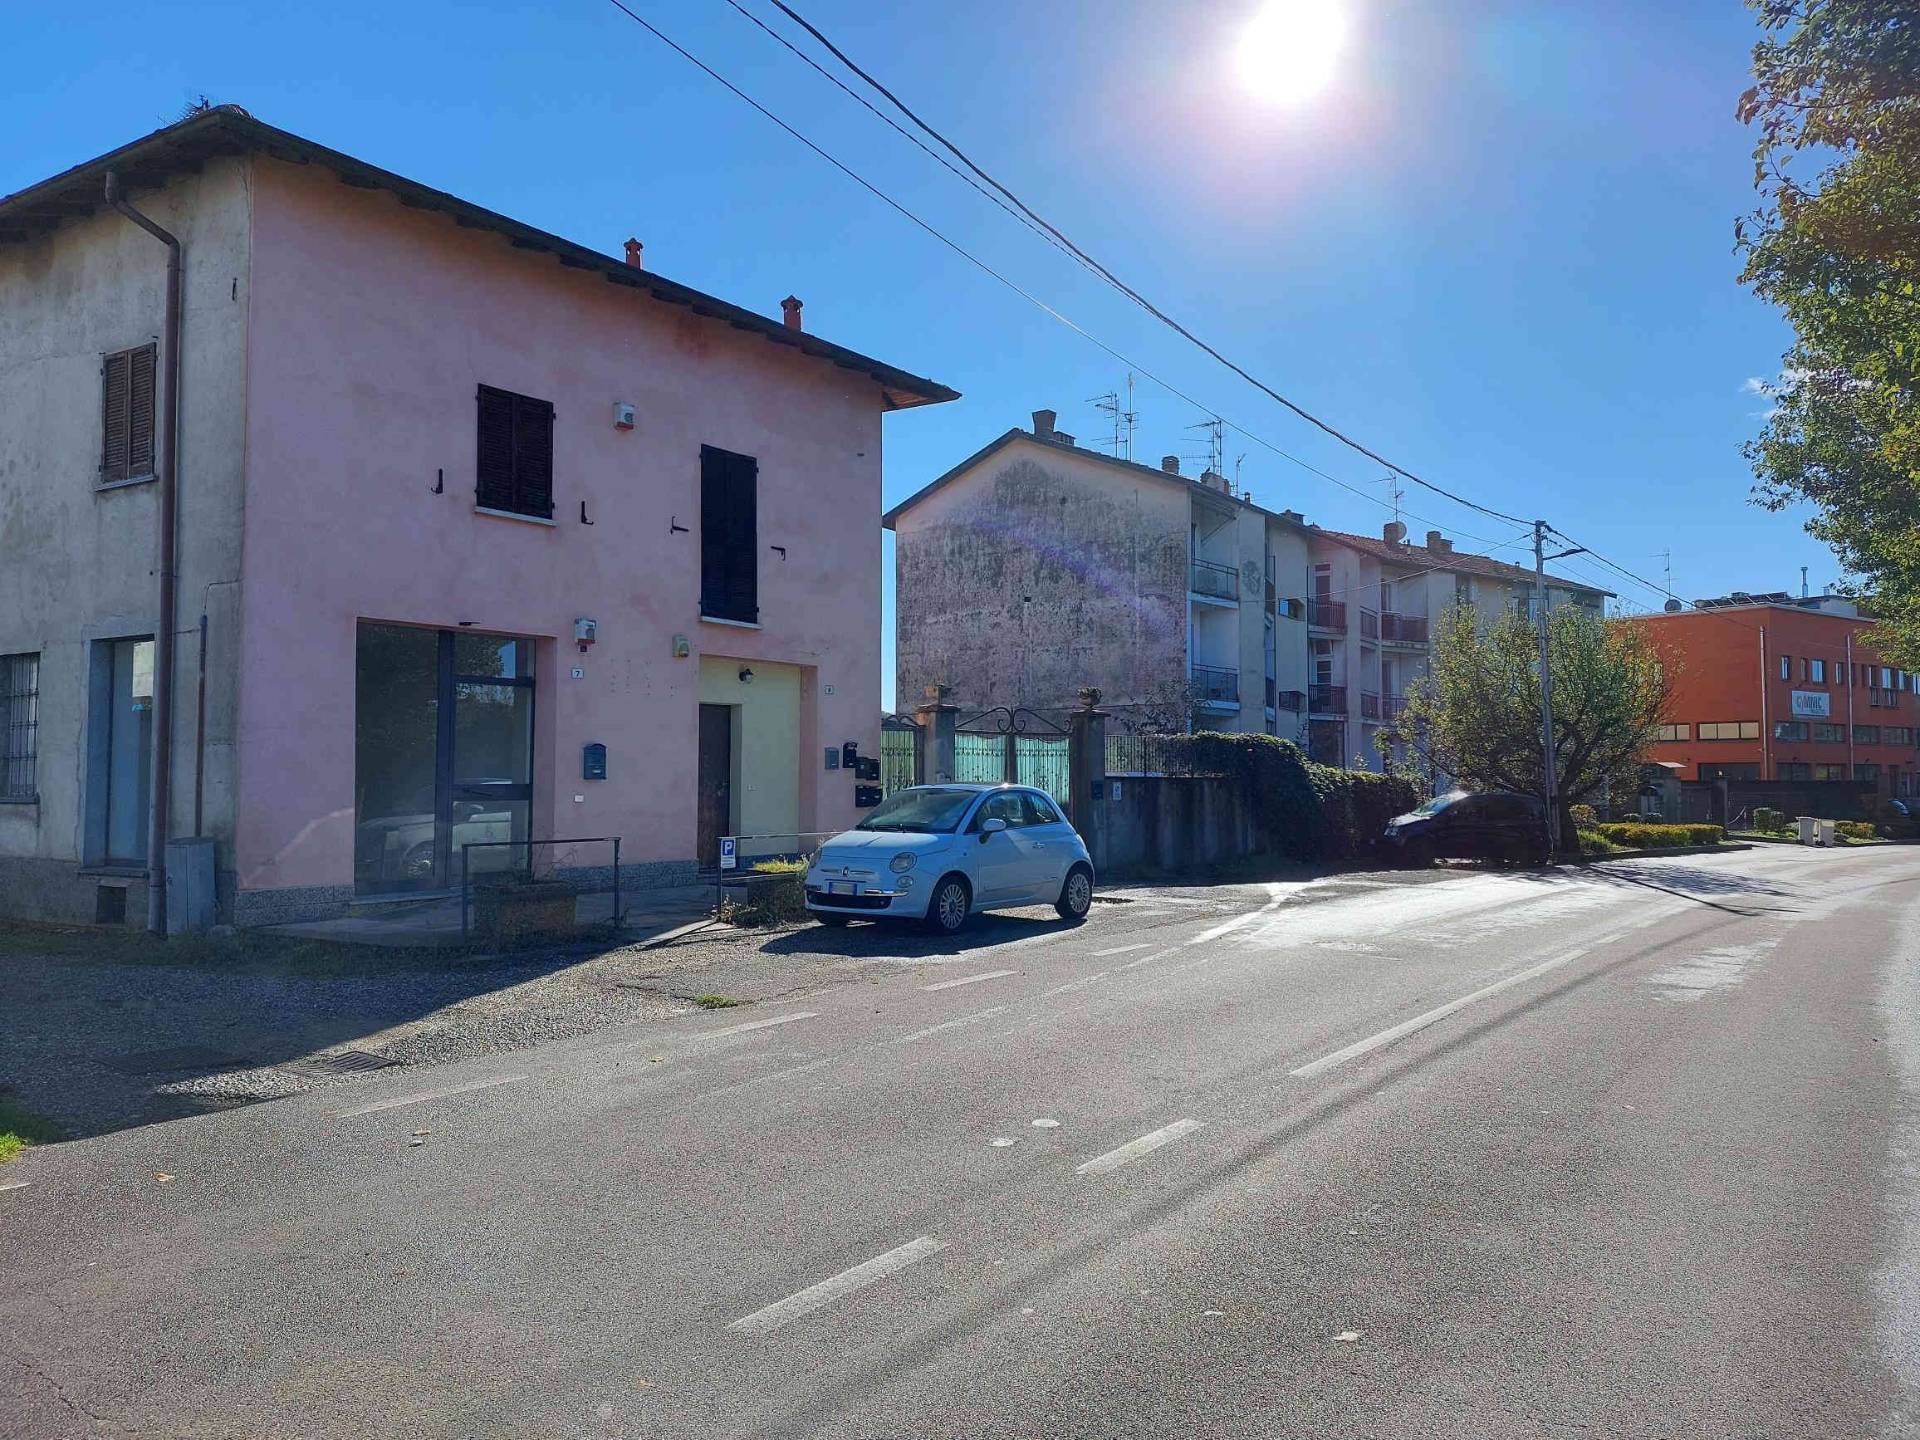 Negozio / Locale in vendita a Venegono Superiore, 9999 locali, prezzo € 70.000 | PortaleAgenzieImmobiliari.it